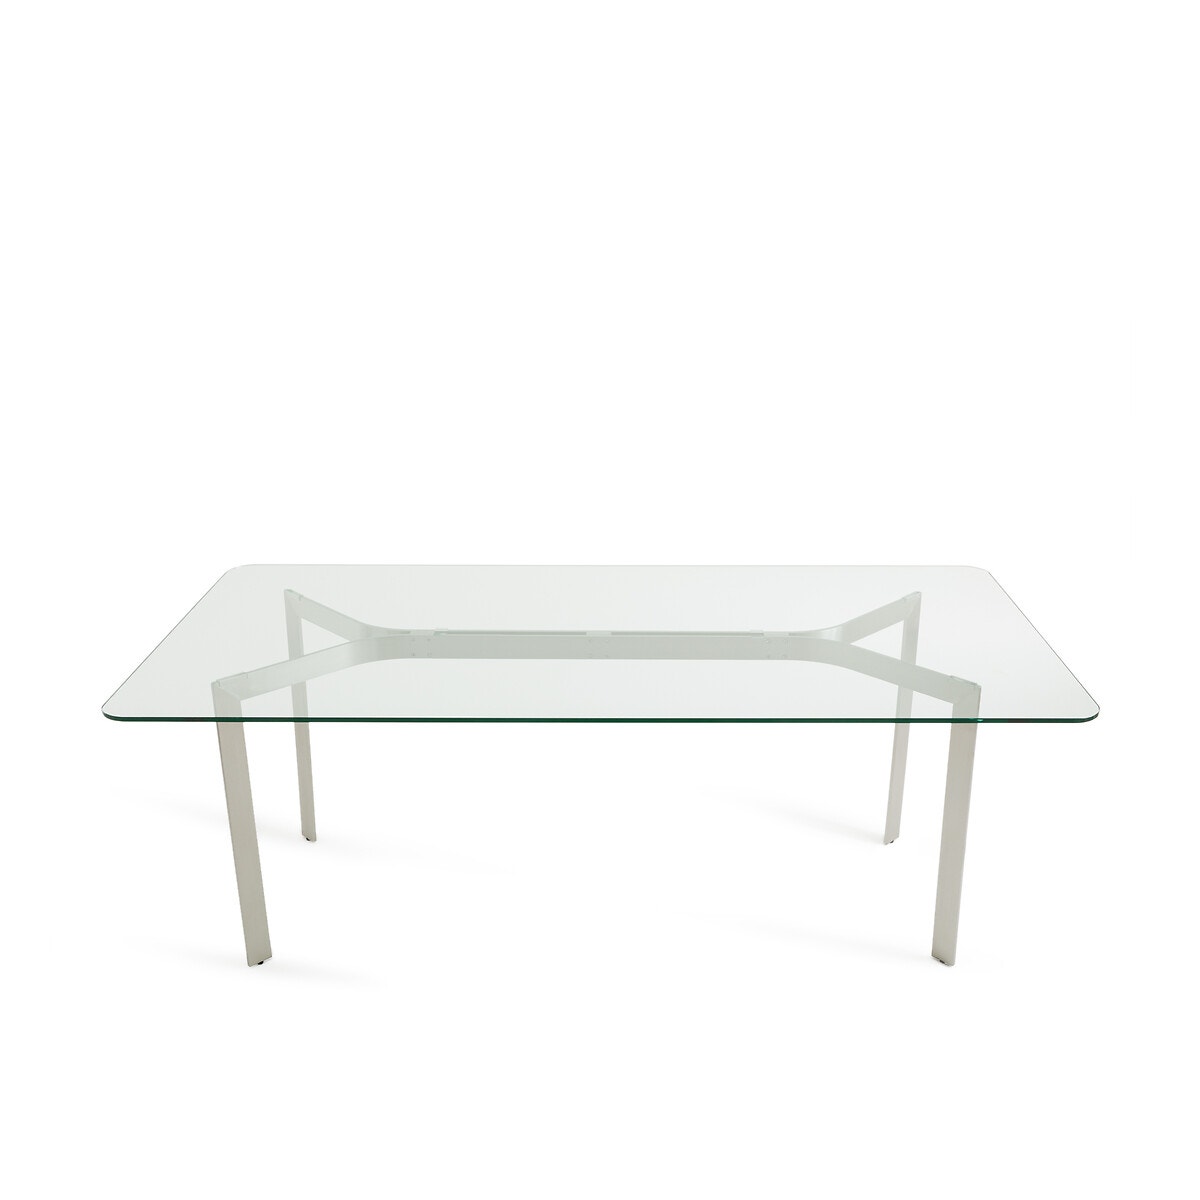 Τραπέζι από σκληρυμένο γυαλί και μέταλλο, Drio